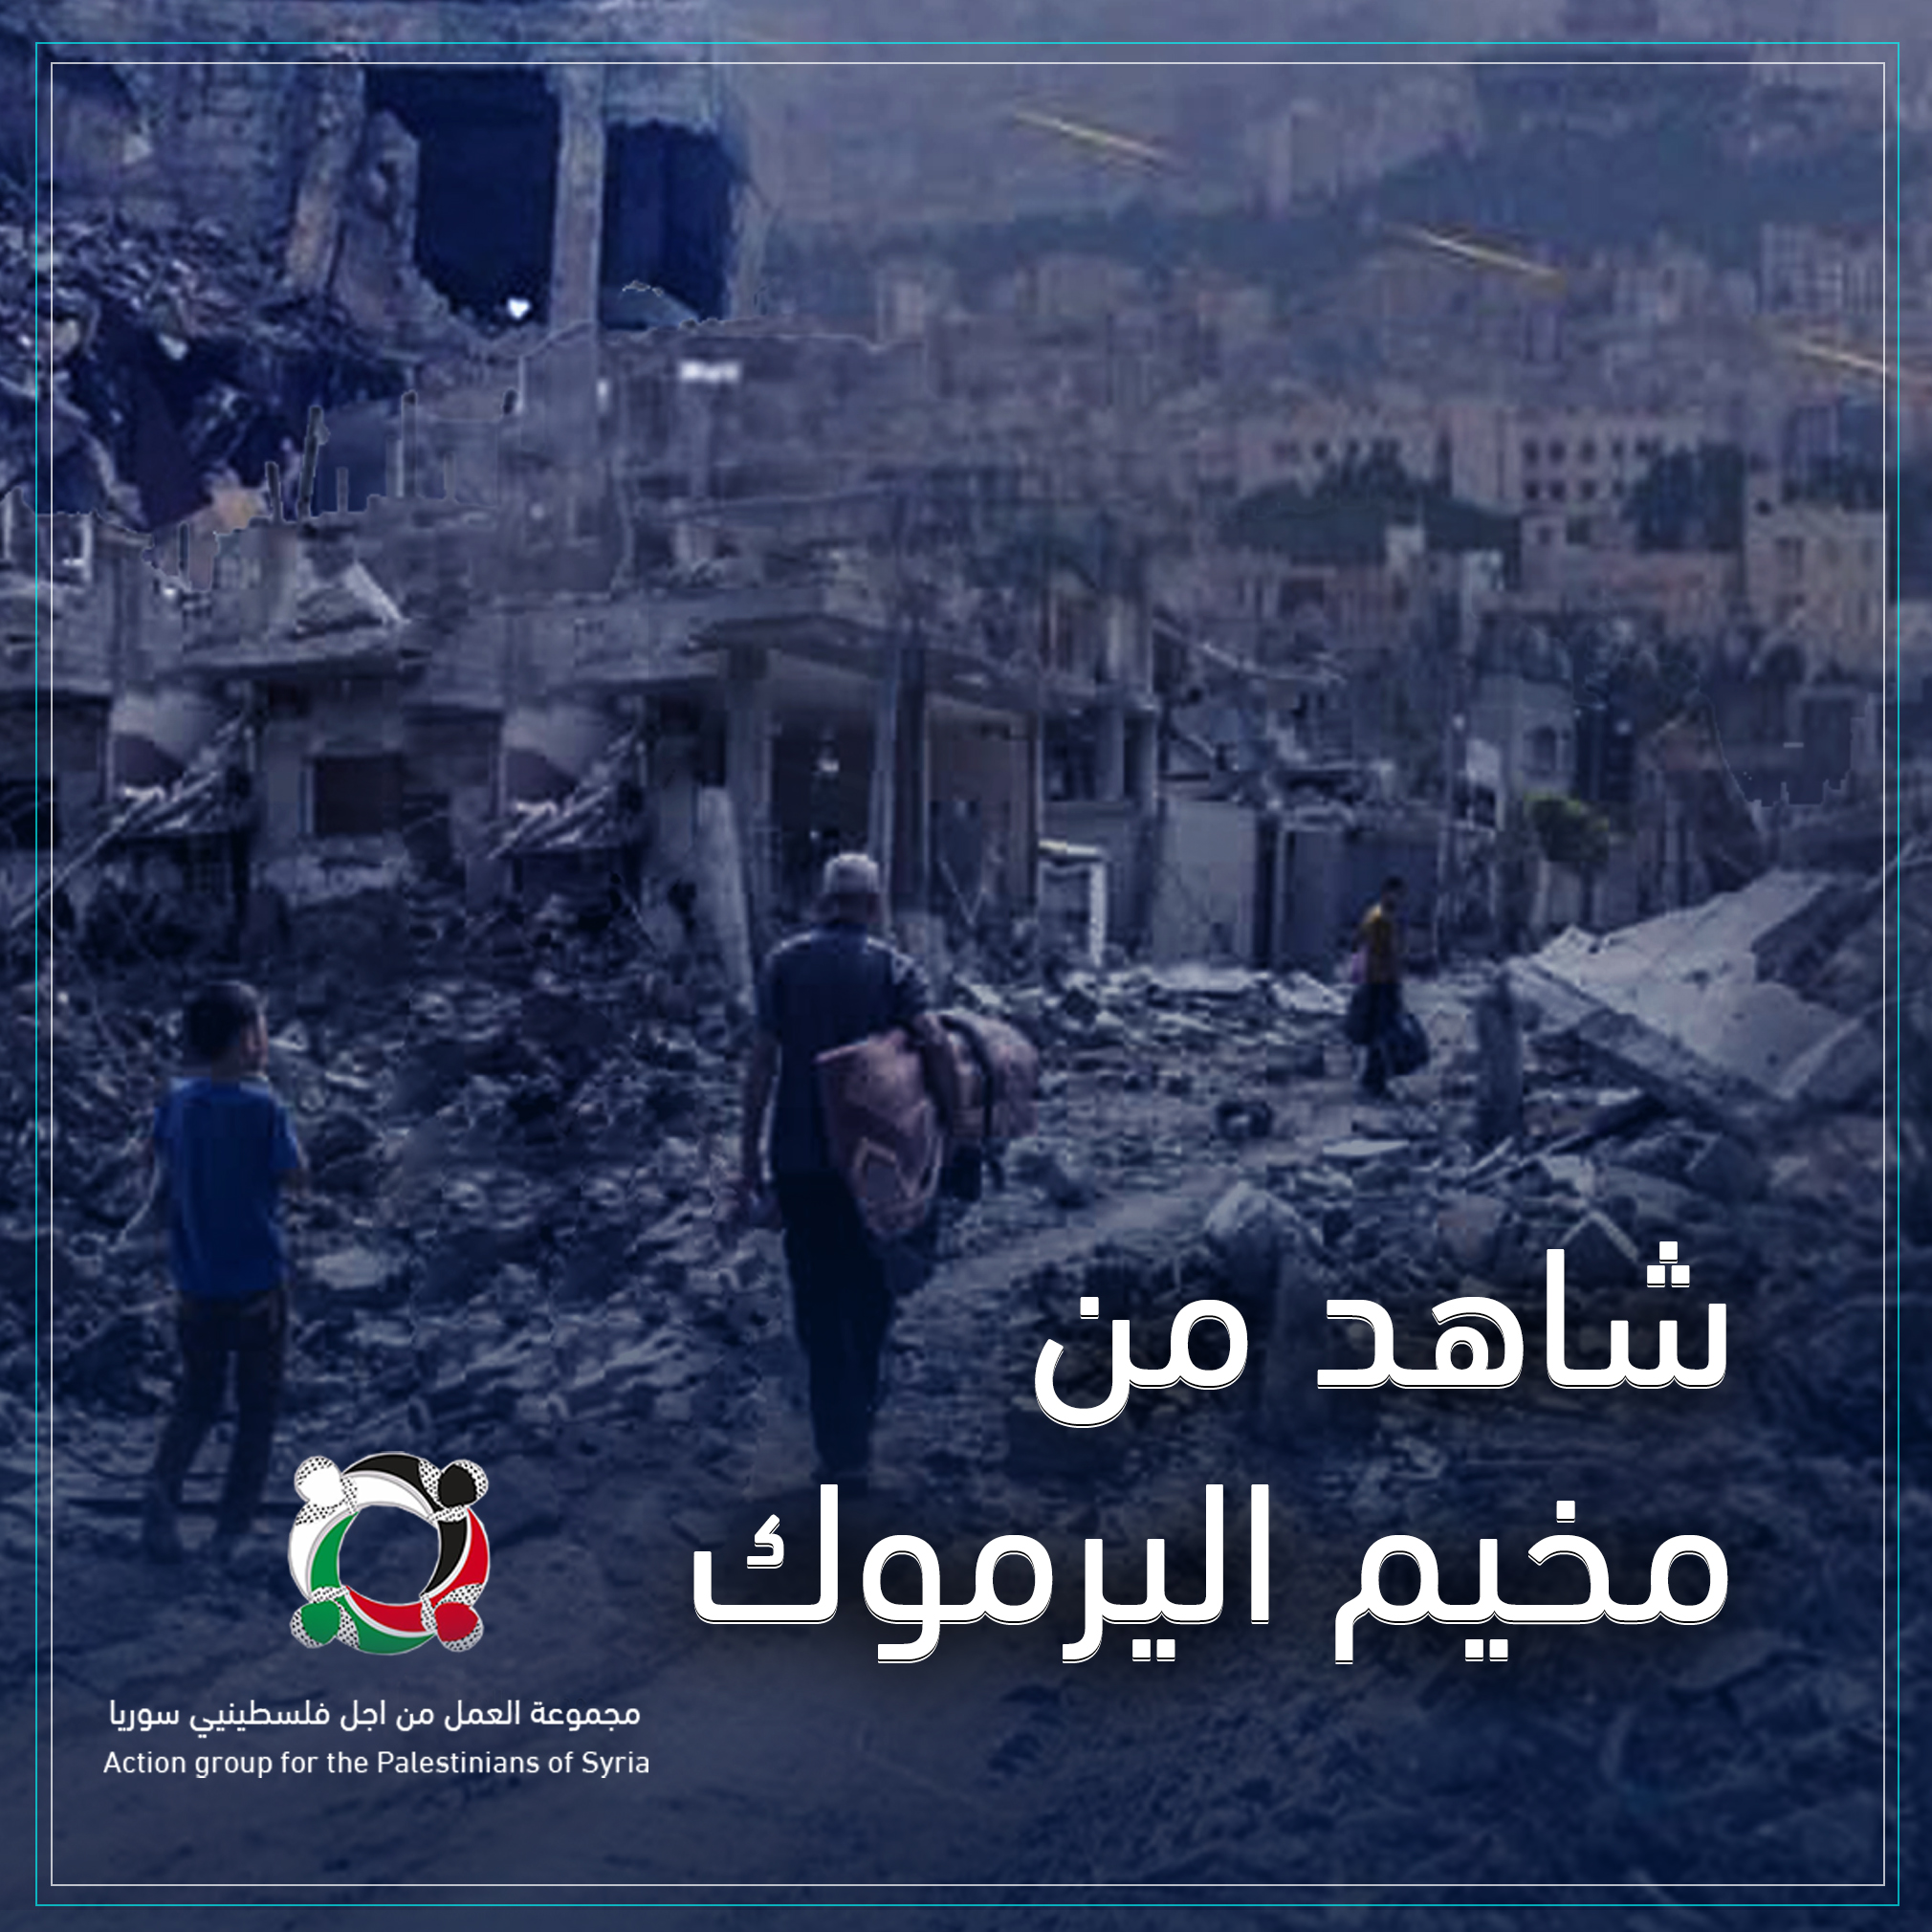 تابعوا معنا الجزء الثاني من حكاية " شاهدٌ من مخيم اليرموك"(2)